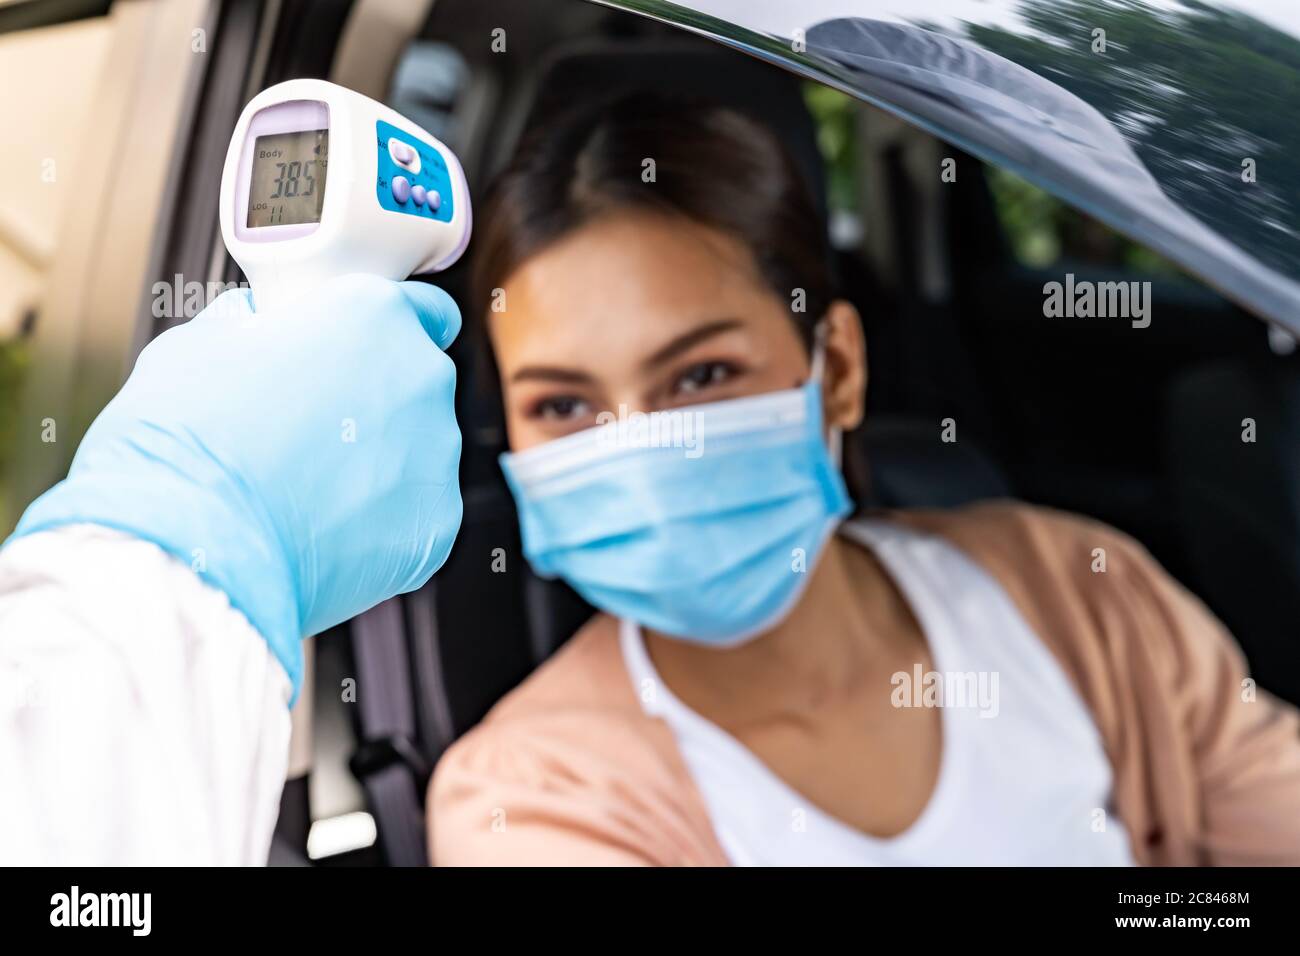 Le personnel médical ayant un EPI prend la température pour la fièvre chez une femme asiatique avant le test du coronavirus Covid-19 au poste de passage au volant de l'hôpital. Nouvelle santé normale Banque D'Images